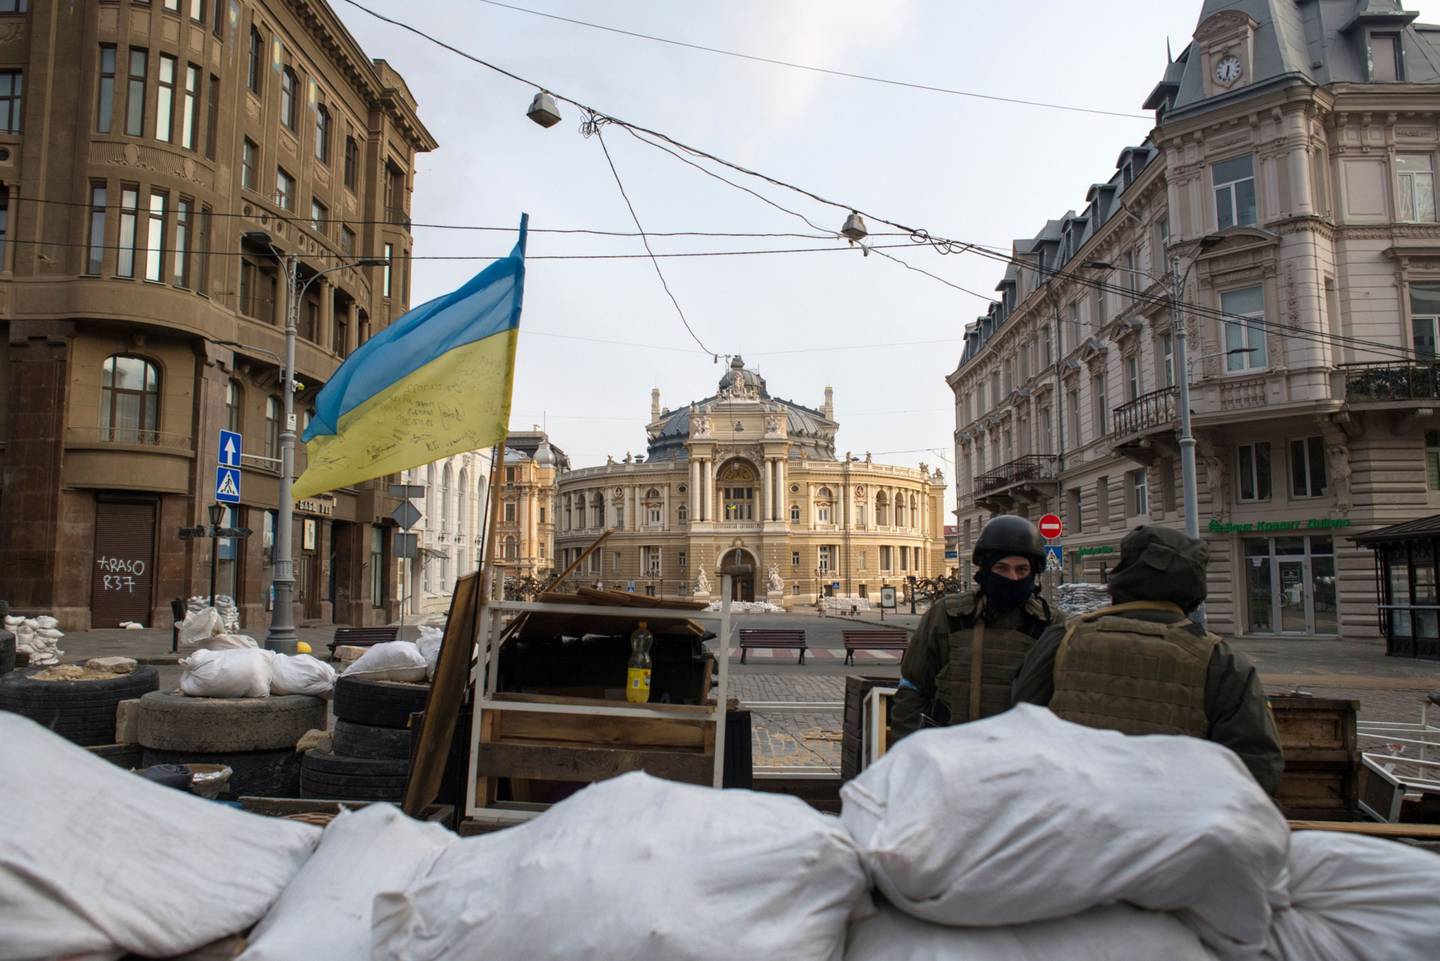 Soldados ucranianos en un puesto de control cerca del Teatro Académico Nacional de Ópera y Ballet de Odessa, en el centro de Odesa, Ucrania, el viernes 18 de marzo de 2022.dfd